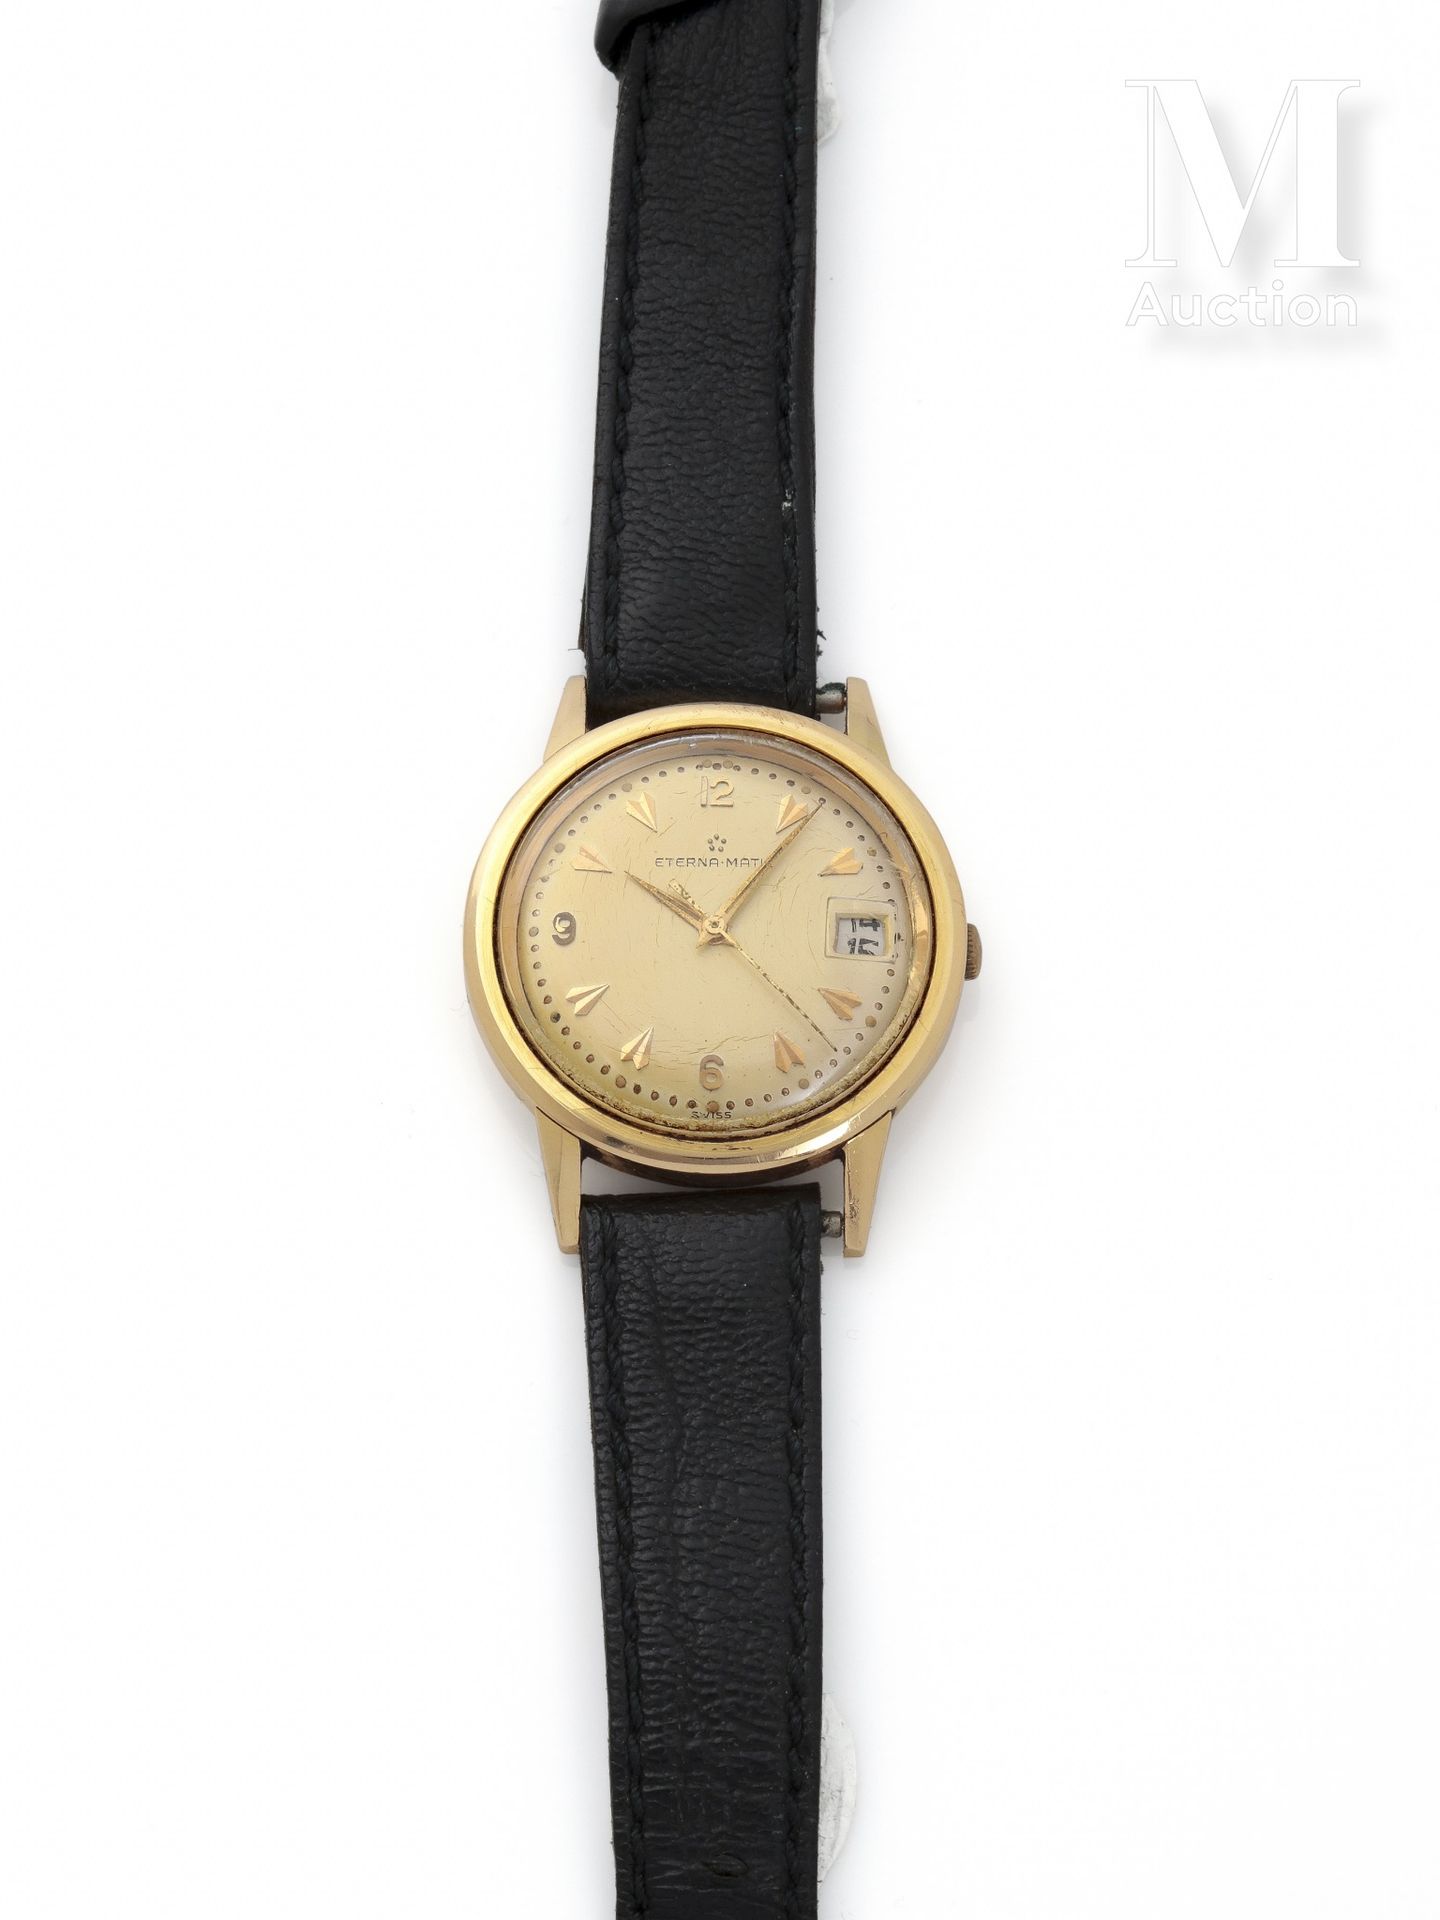 ETERNA-MATIC Men's watch

Circa 1960

18-carat gold case 

Mechanical movement w&hellip;